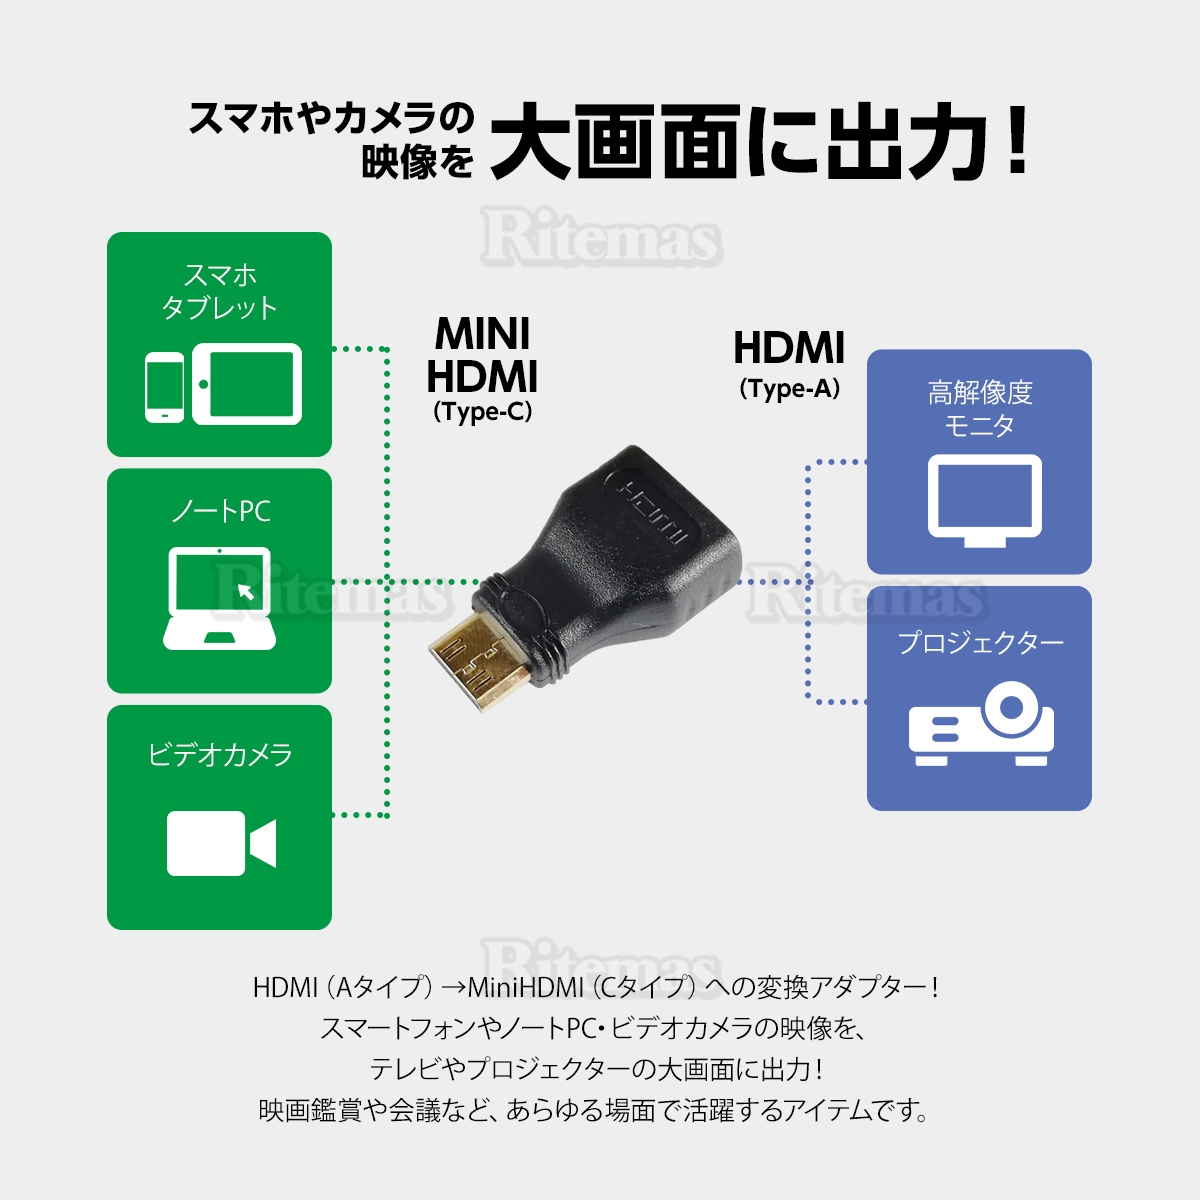 HDMIコネクタをミニHDMIコネクタに変換するHDMI変換アダプタ